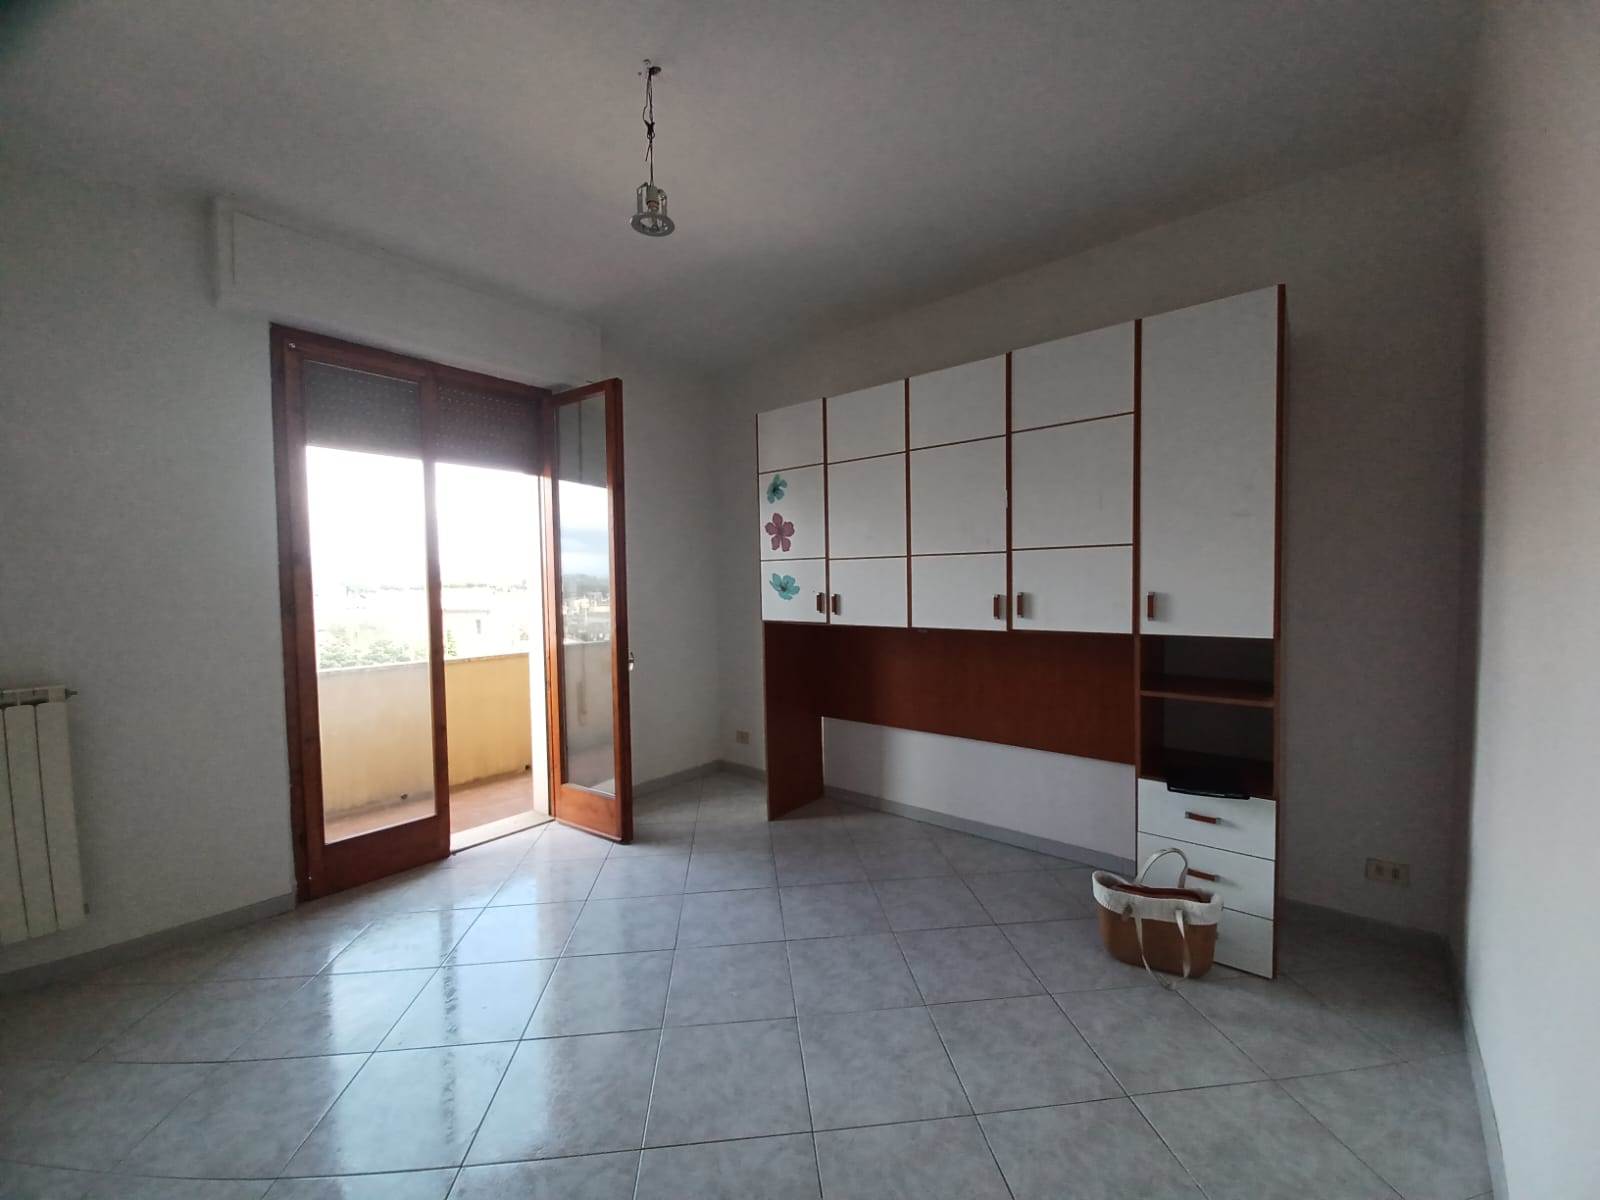 Appartamento in vendita a Empoli, 4 locali, prezzo € 165.000 | PortaleAgenzieImmobiliari.it